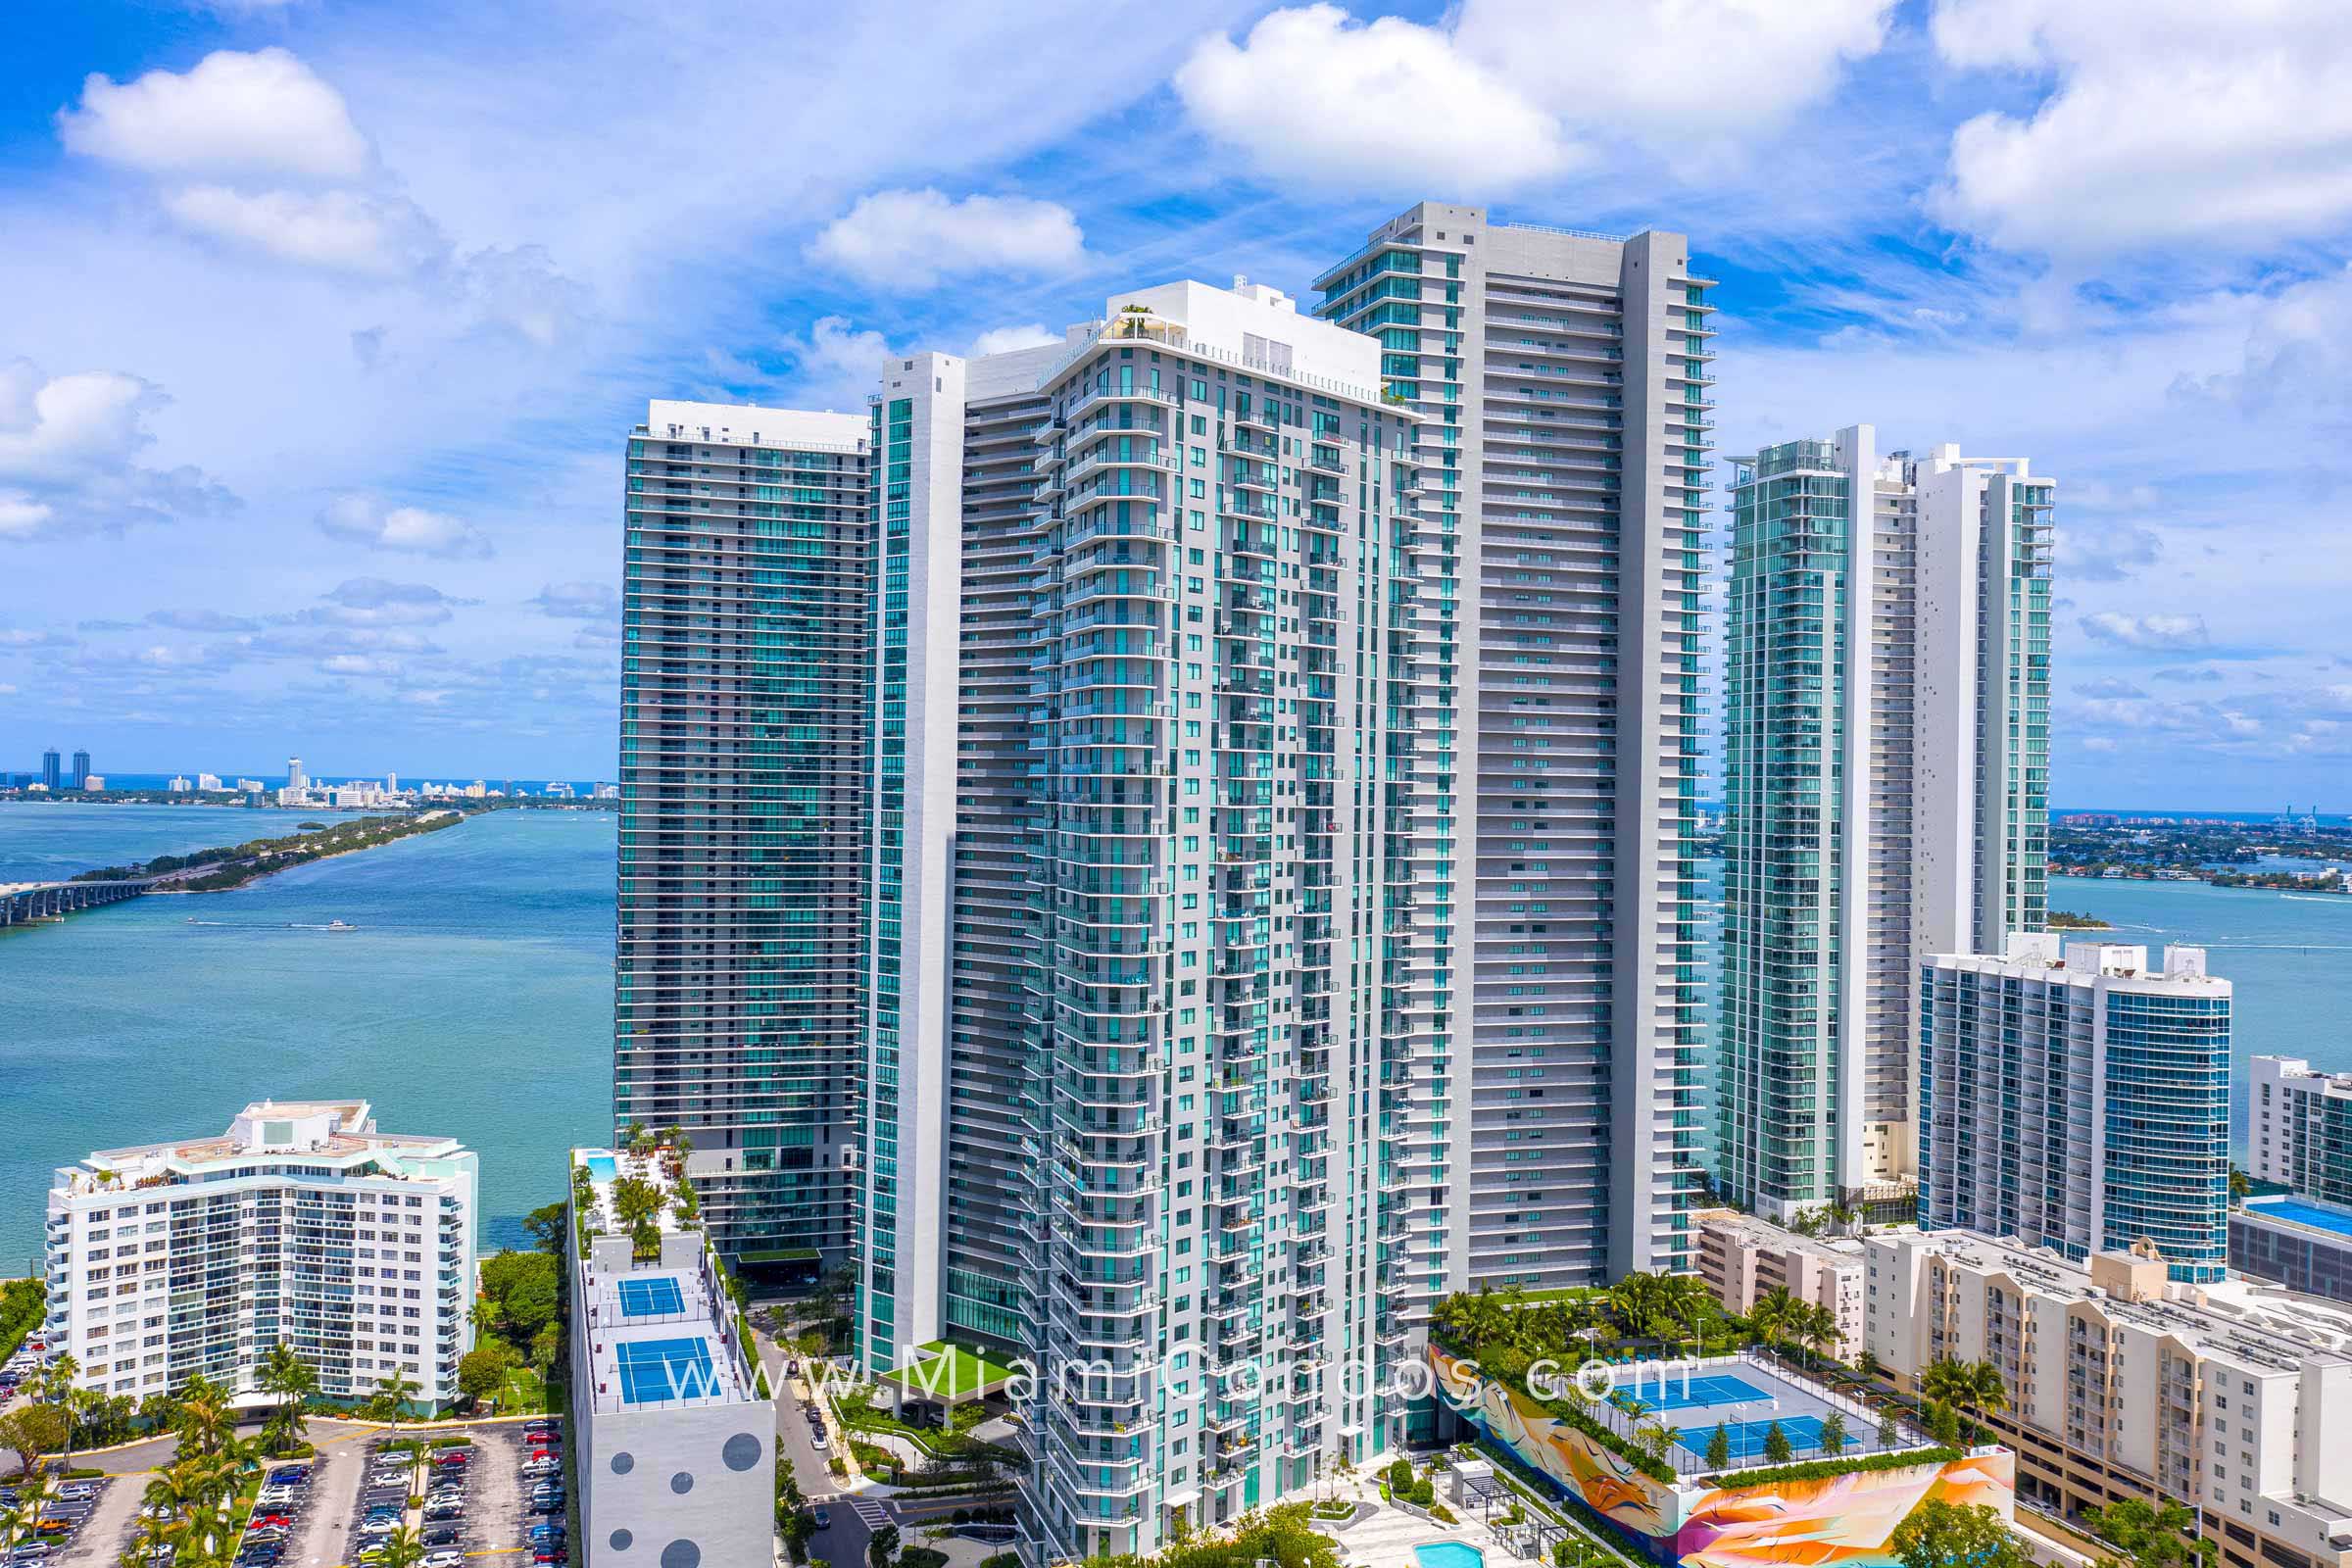 Paraiso Bayviews in Miami